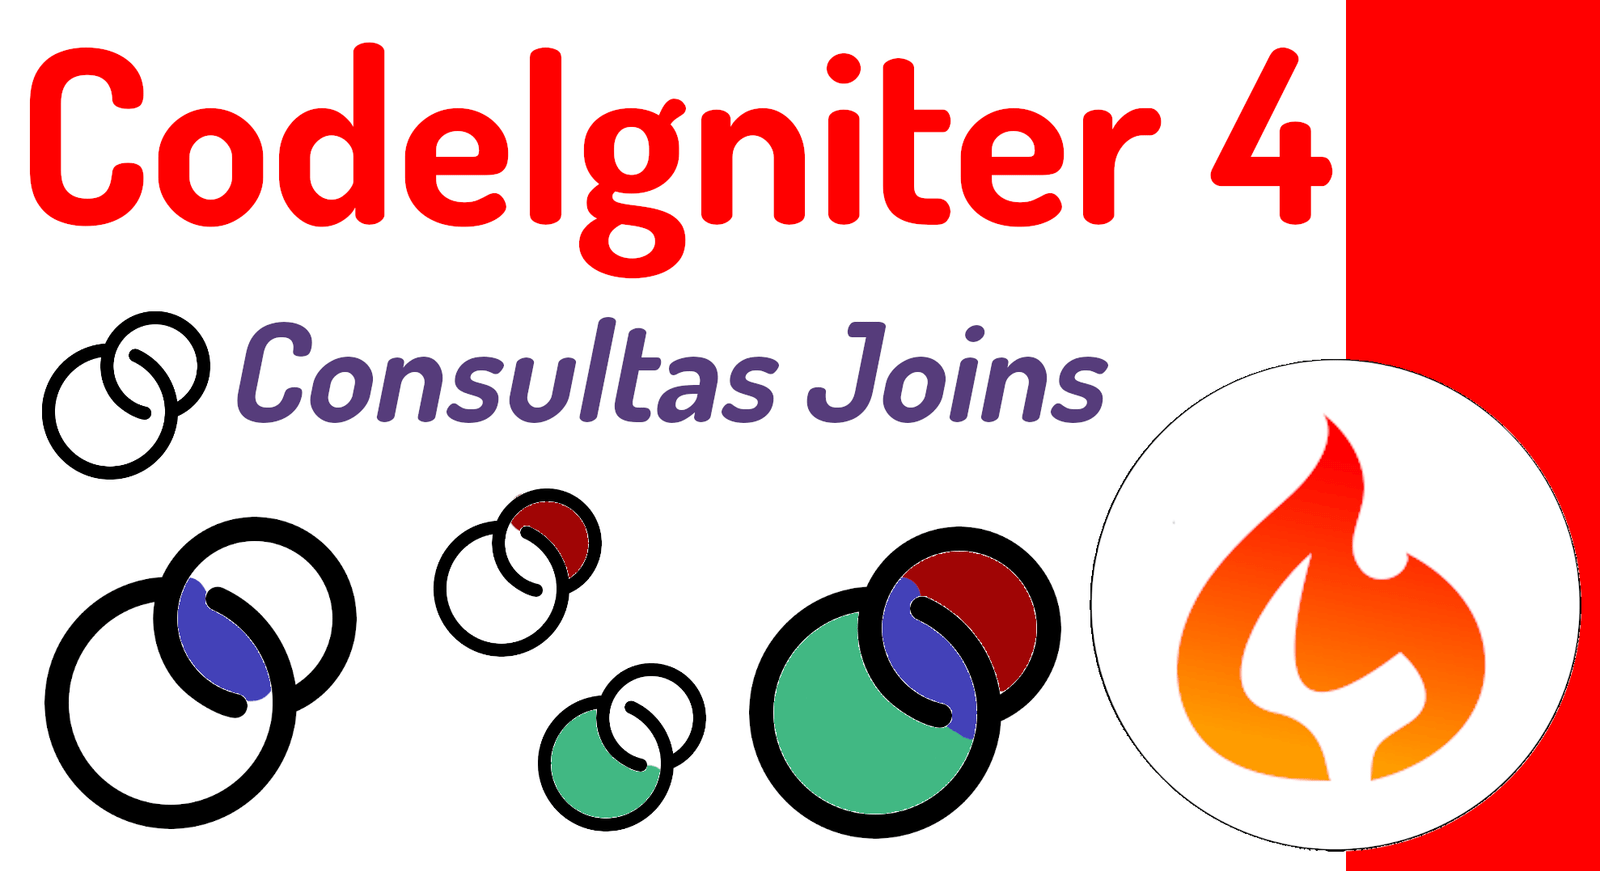 Consultas joins para la base de datos en CodeIgniter 4